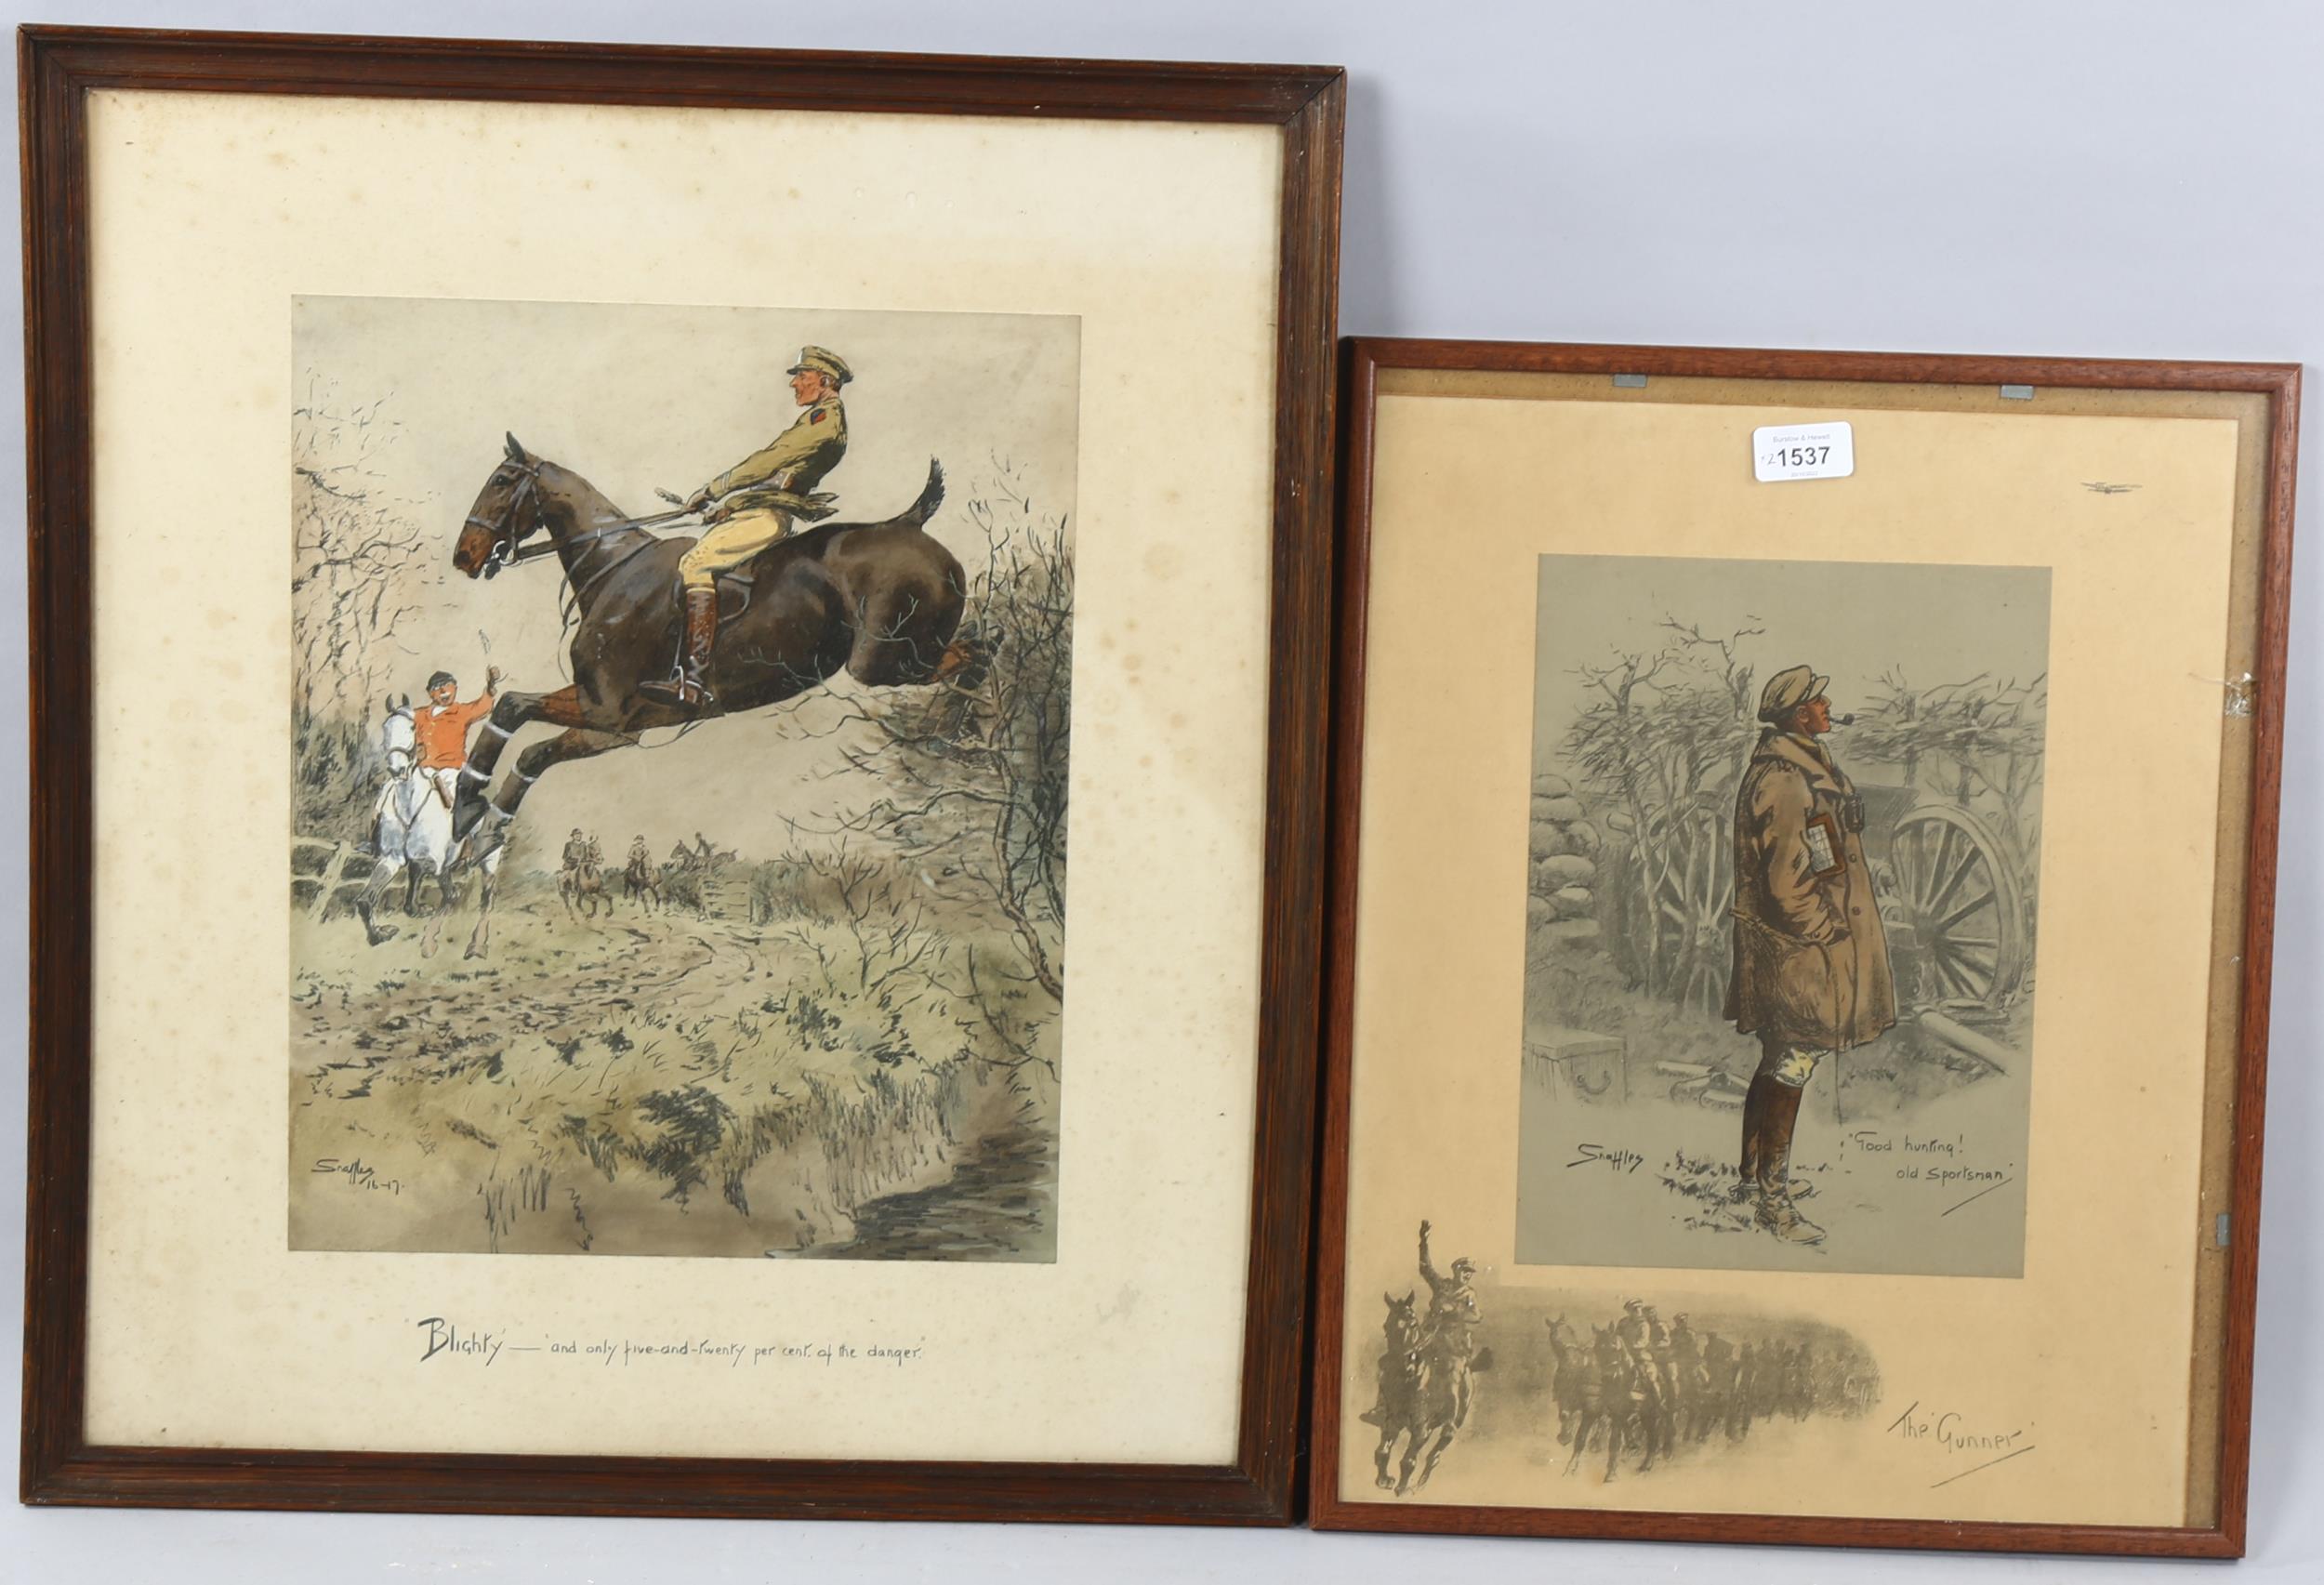 Snaffles, 2 prints, the gunner, 44cm x 33cm, and Blighty, image 38cm x 30cm, framed (2) The gunner